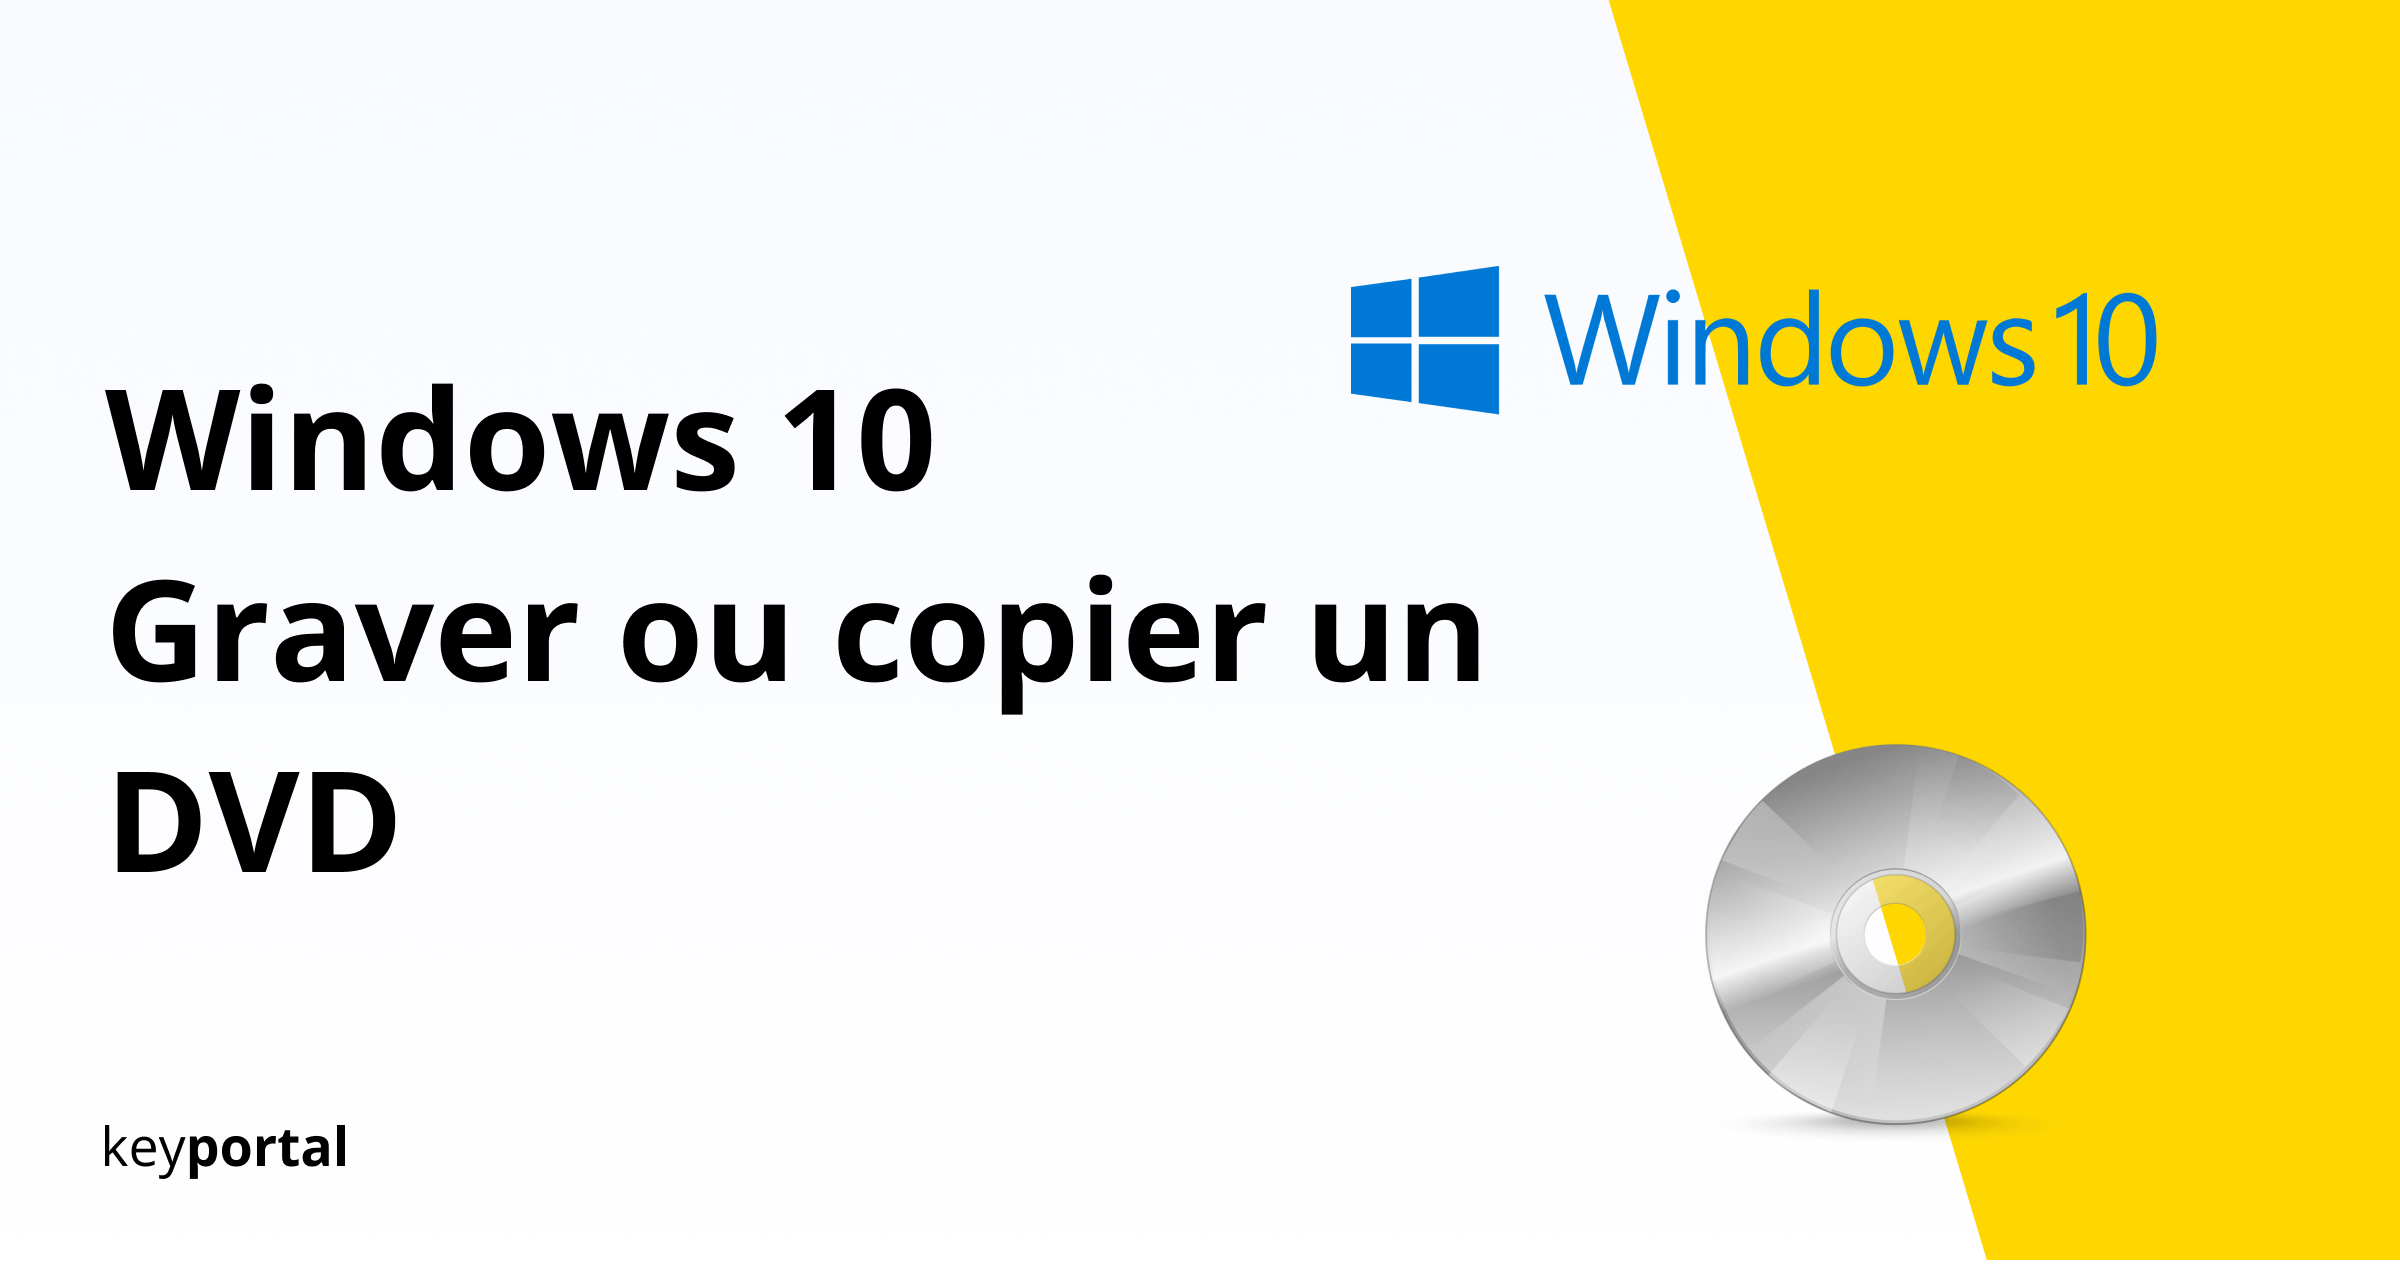 Graver ou copier un DVD Windows 10 